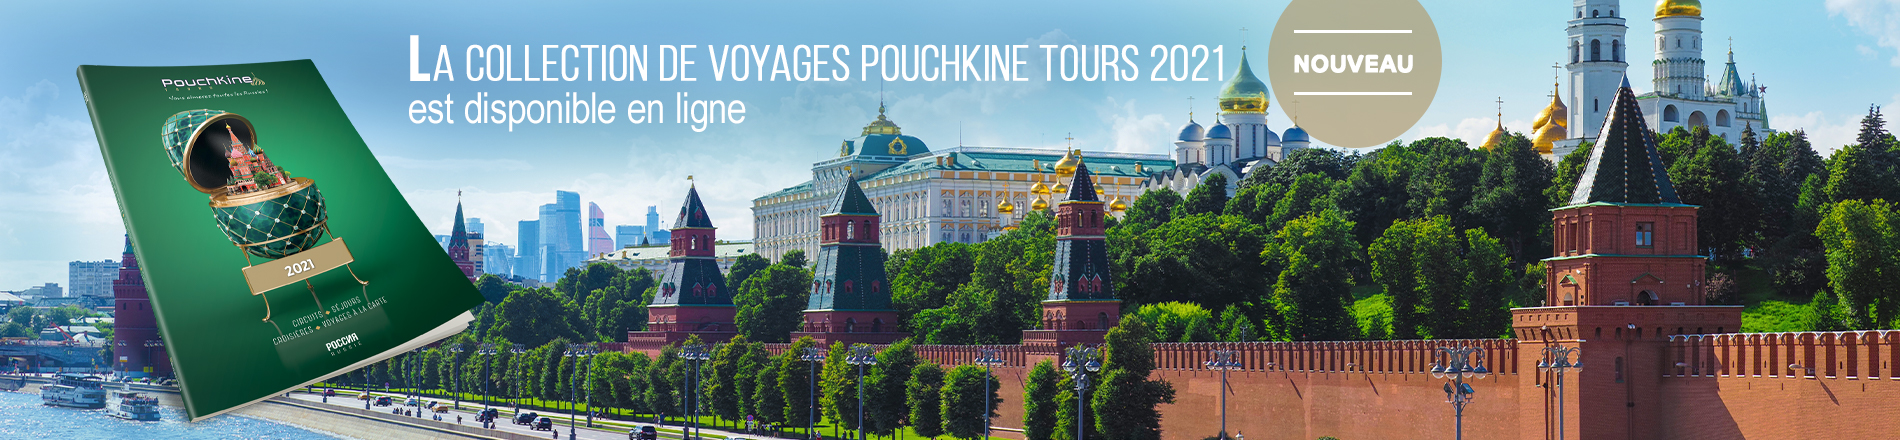 Nouvelle collection de voyages 2021 Pouchkine Tours